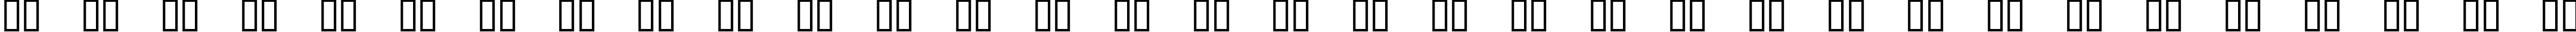 Пример написания русского алфавита шрифтом Royfont